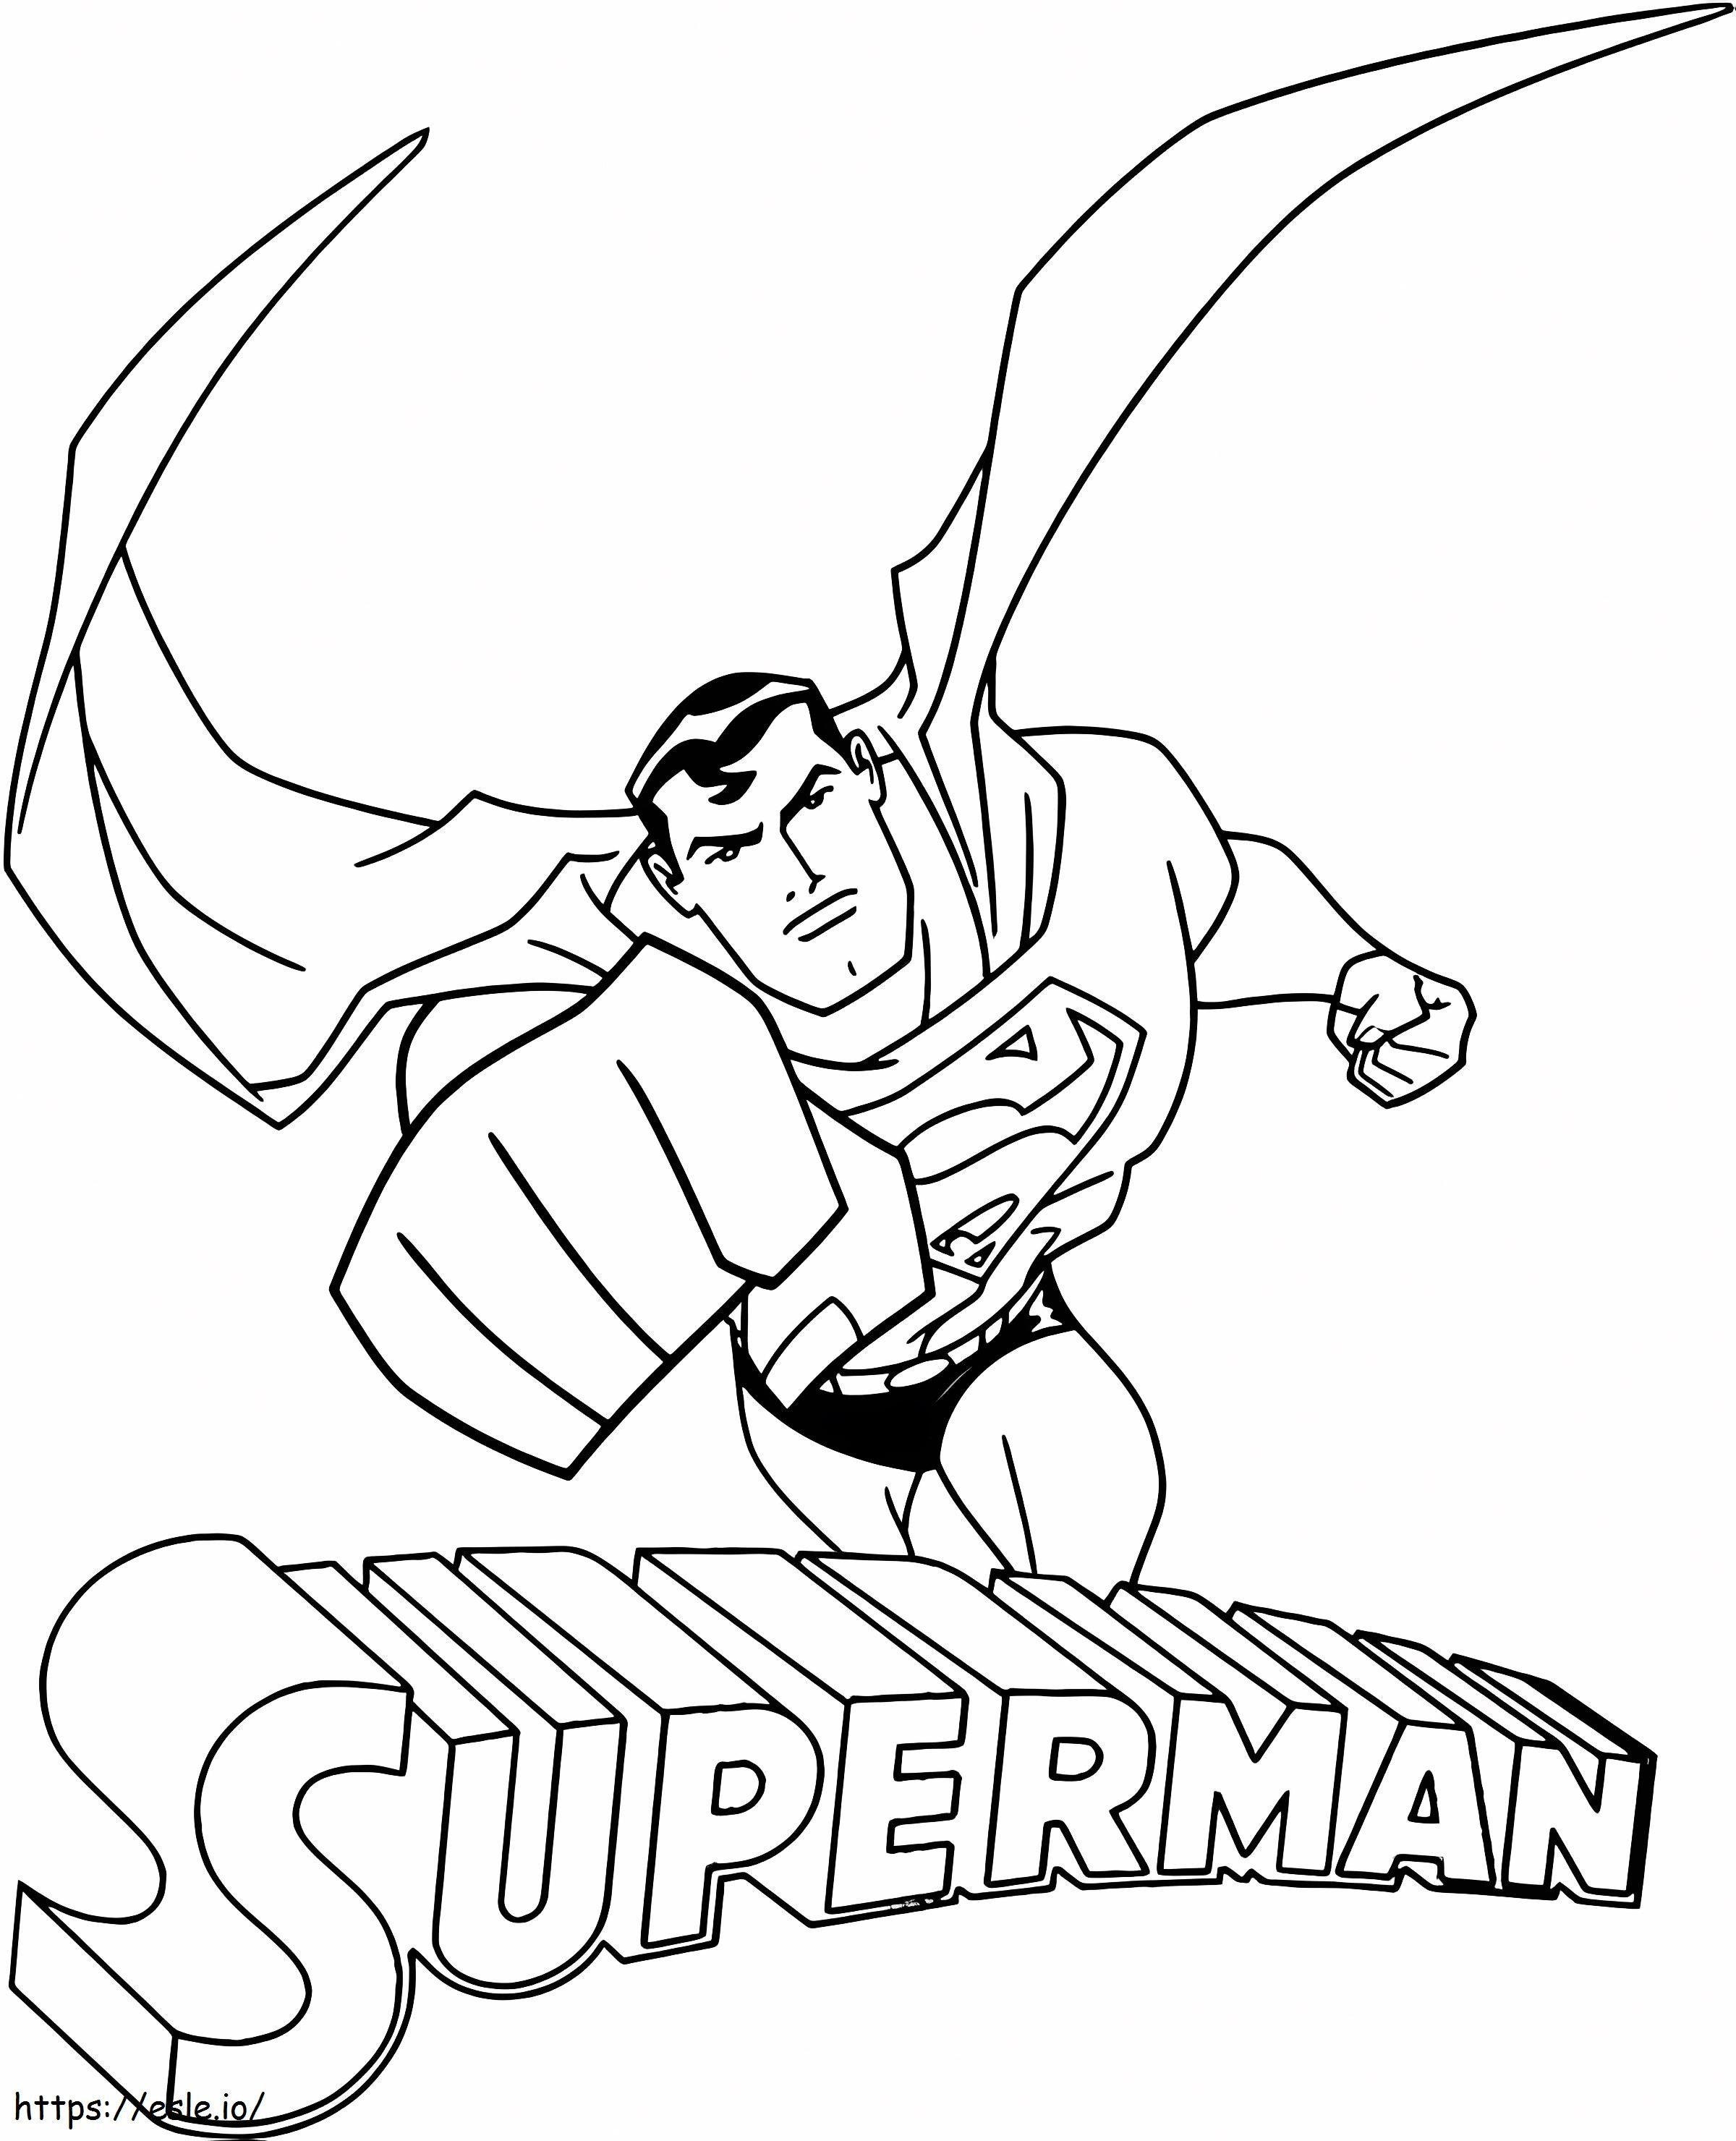 Cartoon Superman coloring page